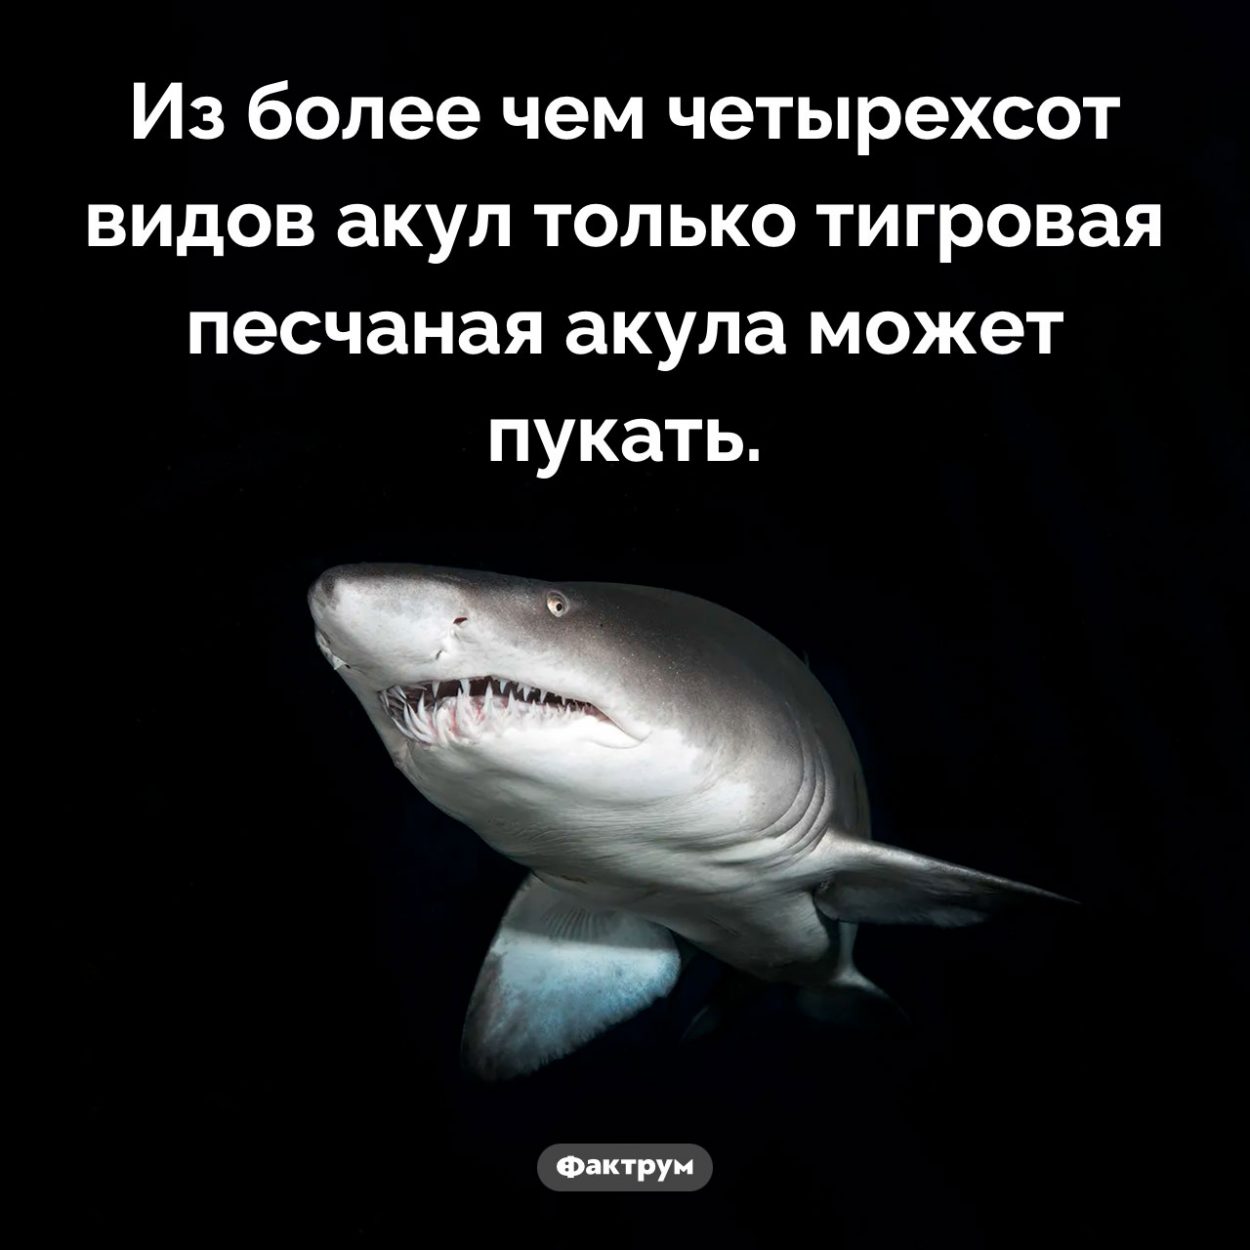 Акулы и кишечные газы. Из более чем четырехсот видов акул только тигровая песчаная акула может пукать.